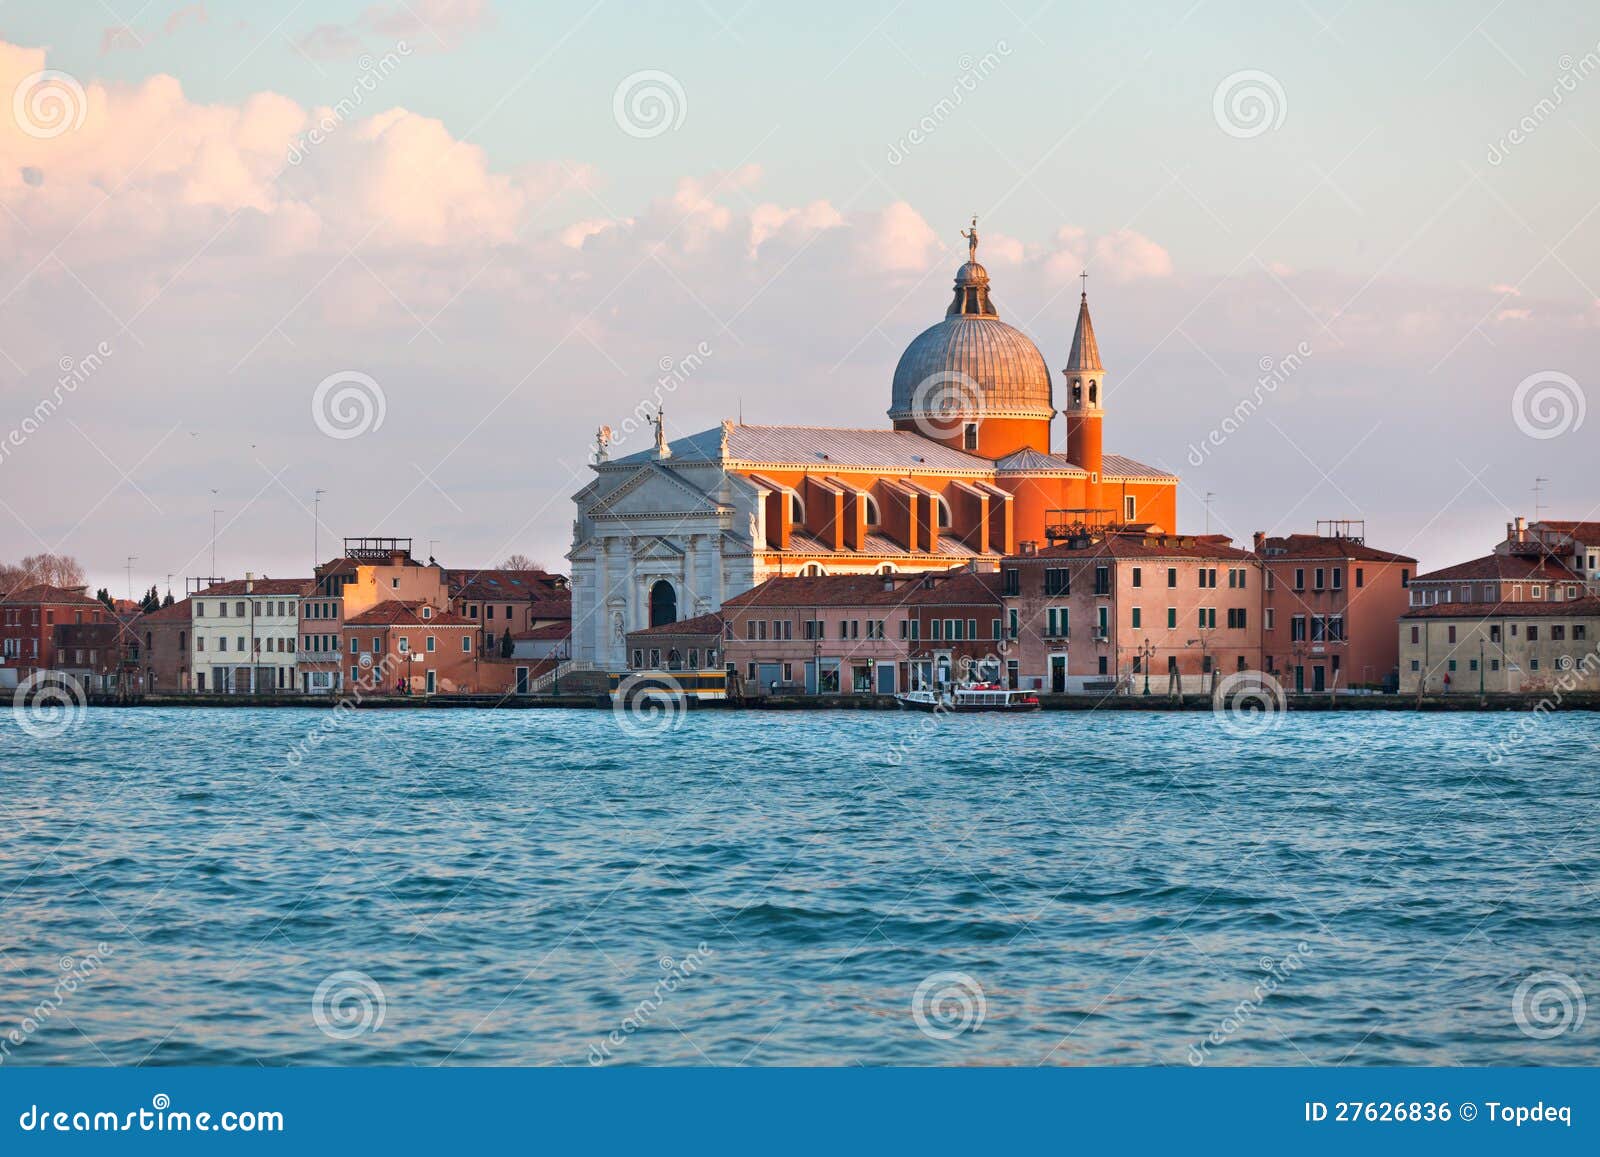 Il Redentore Church in Venice Stock Photo - Image of cityscape ...